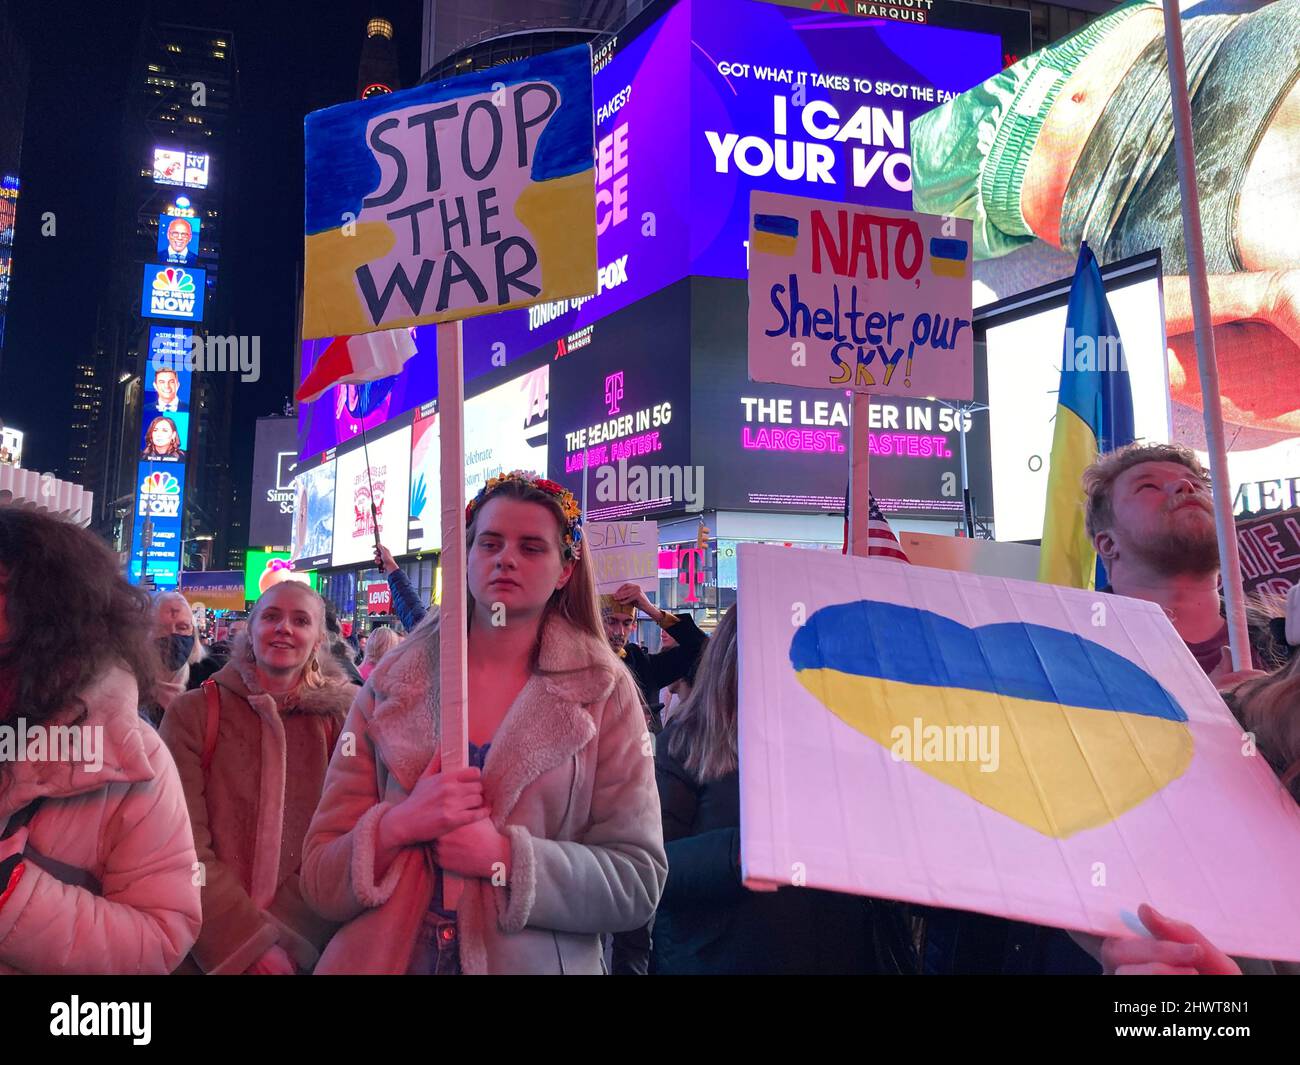 Les Ukrainiens-Américains et leurs partisans protestent contre l'invasion russe et manifestent leur soutien aux citoyens de l'Ukraine, à Times Square, à New York, le mercredi 2 mars 2022. (© Frances M. Roberts) Banque D'Images